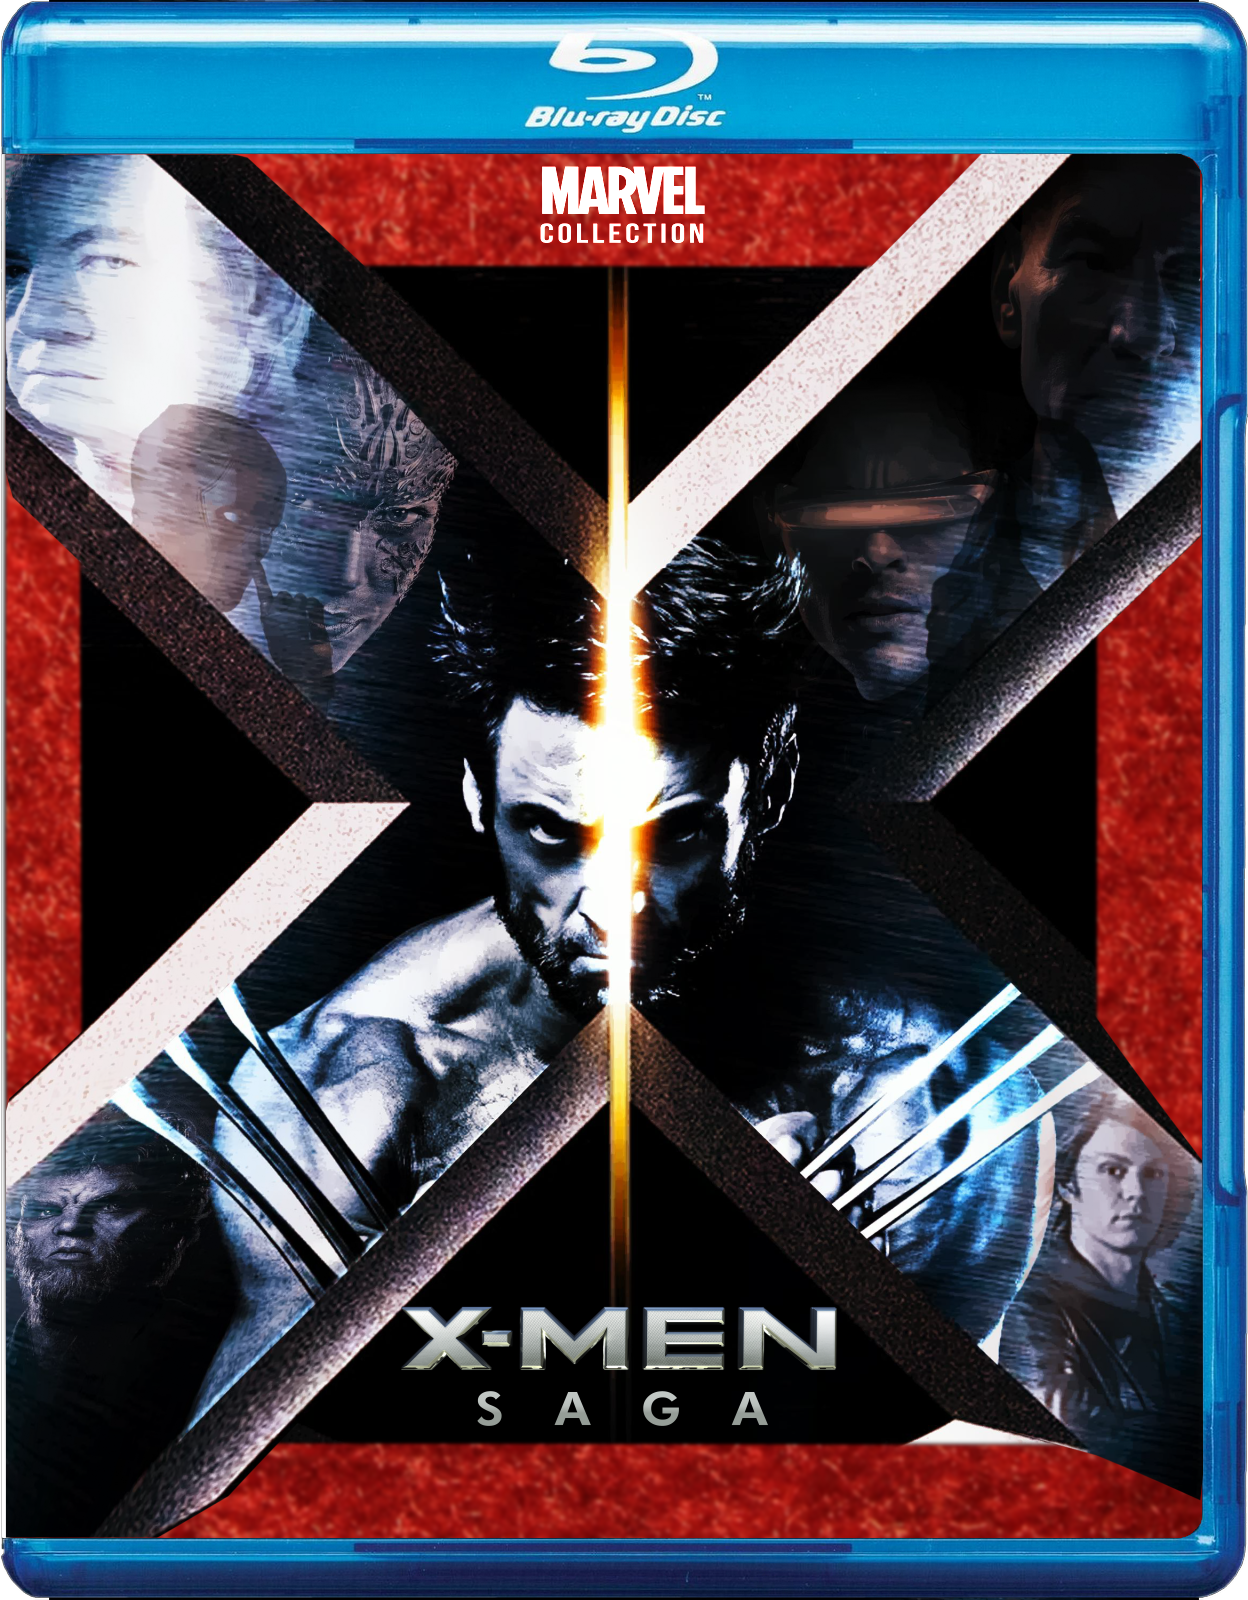 The X-Men Saga (BluRay Cover Art) by MacSchaer on DeviantArt